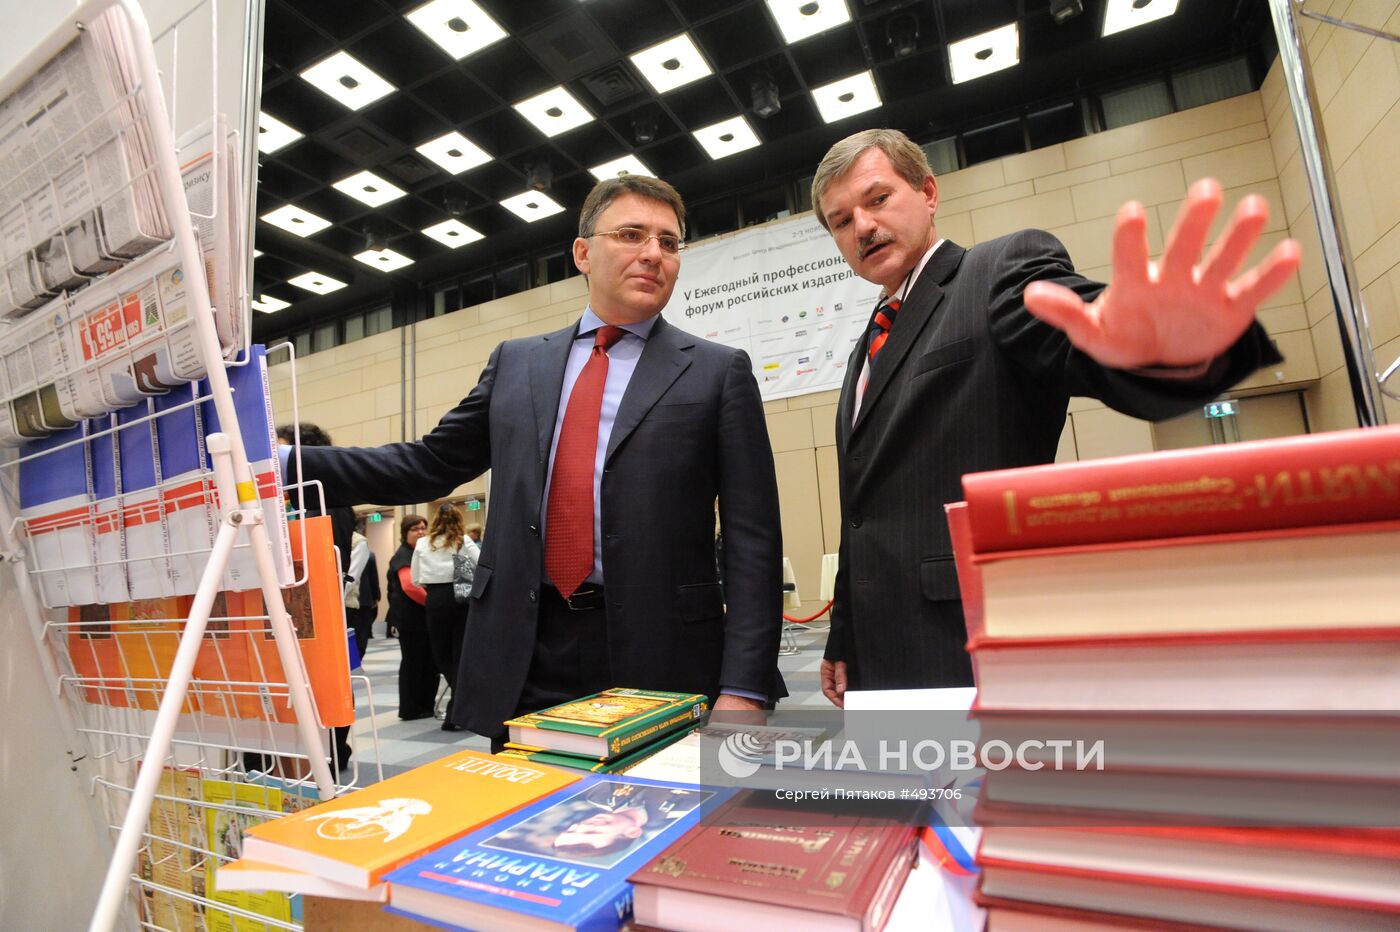 Форум российских издателей "Издательский бизнес-2009"